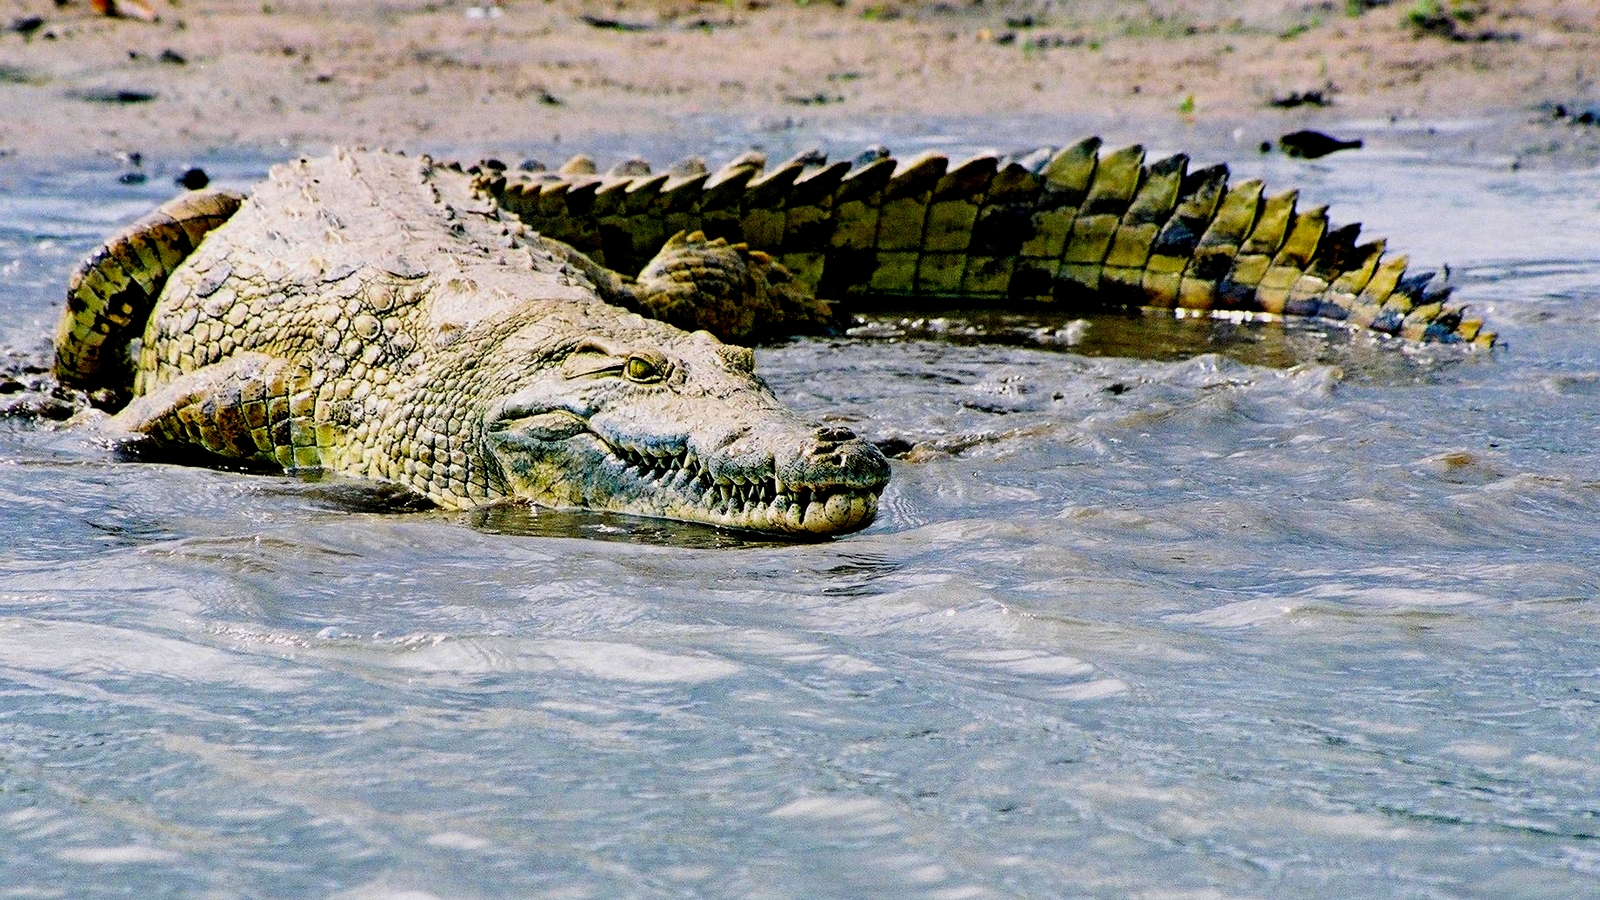 COCODRILOS | Cuanto viven los cocodrilos, cuánto pesan y miden